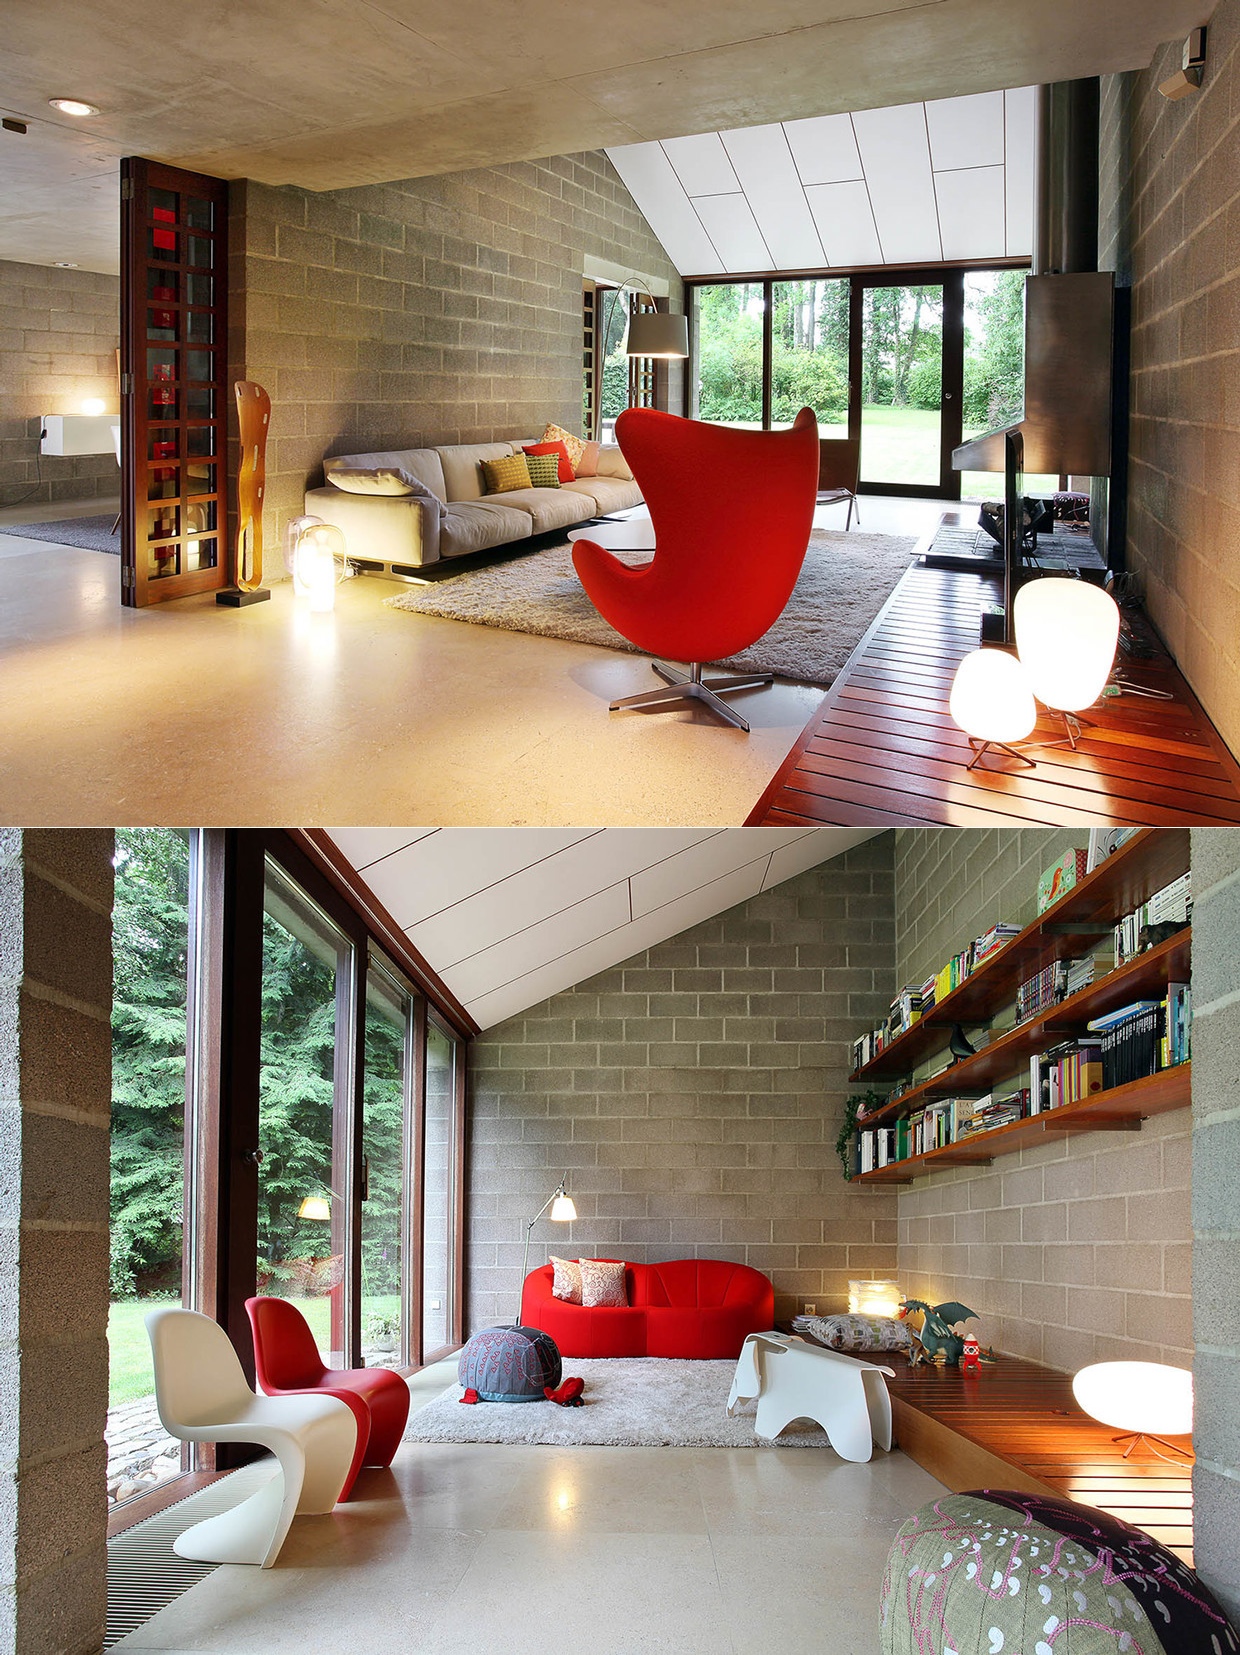 Thiết kế nội thất đưa năng lượng xanh vào không gian phòng khách đem lại sự thoải mái